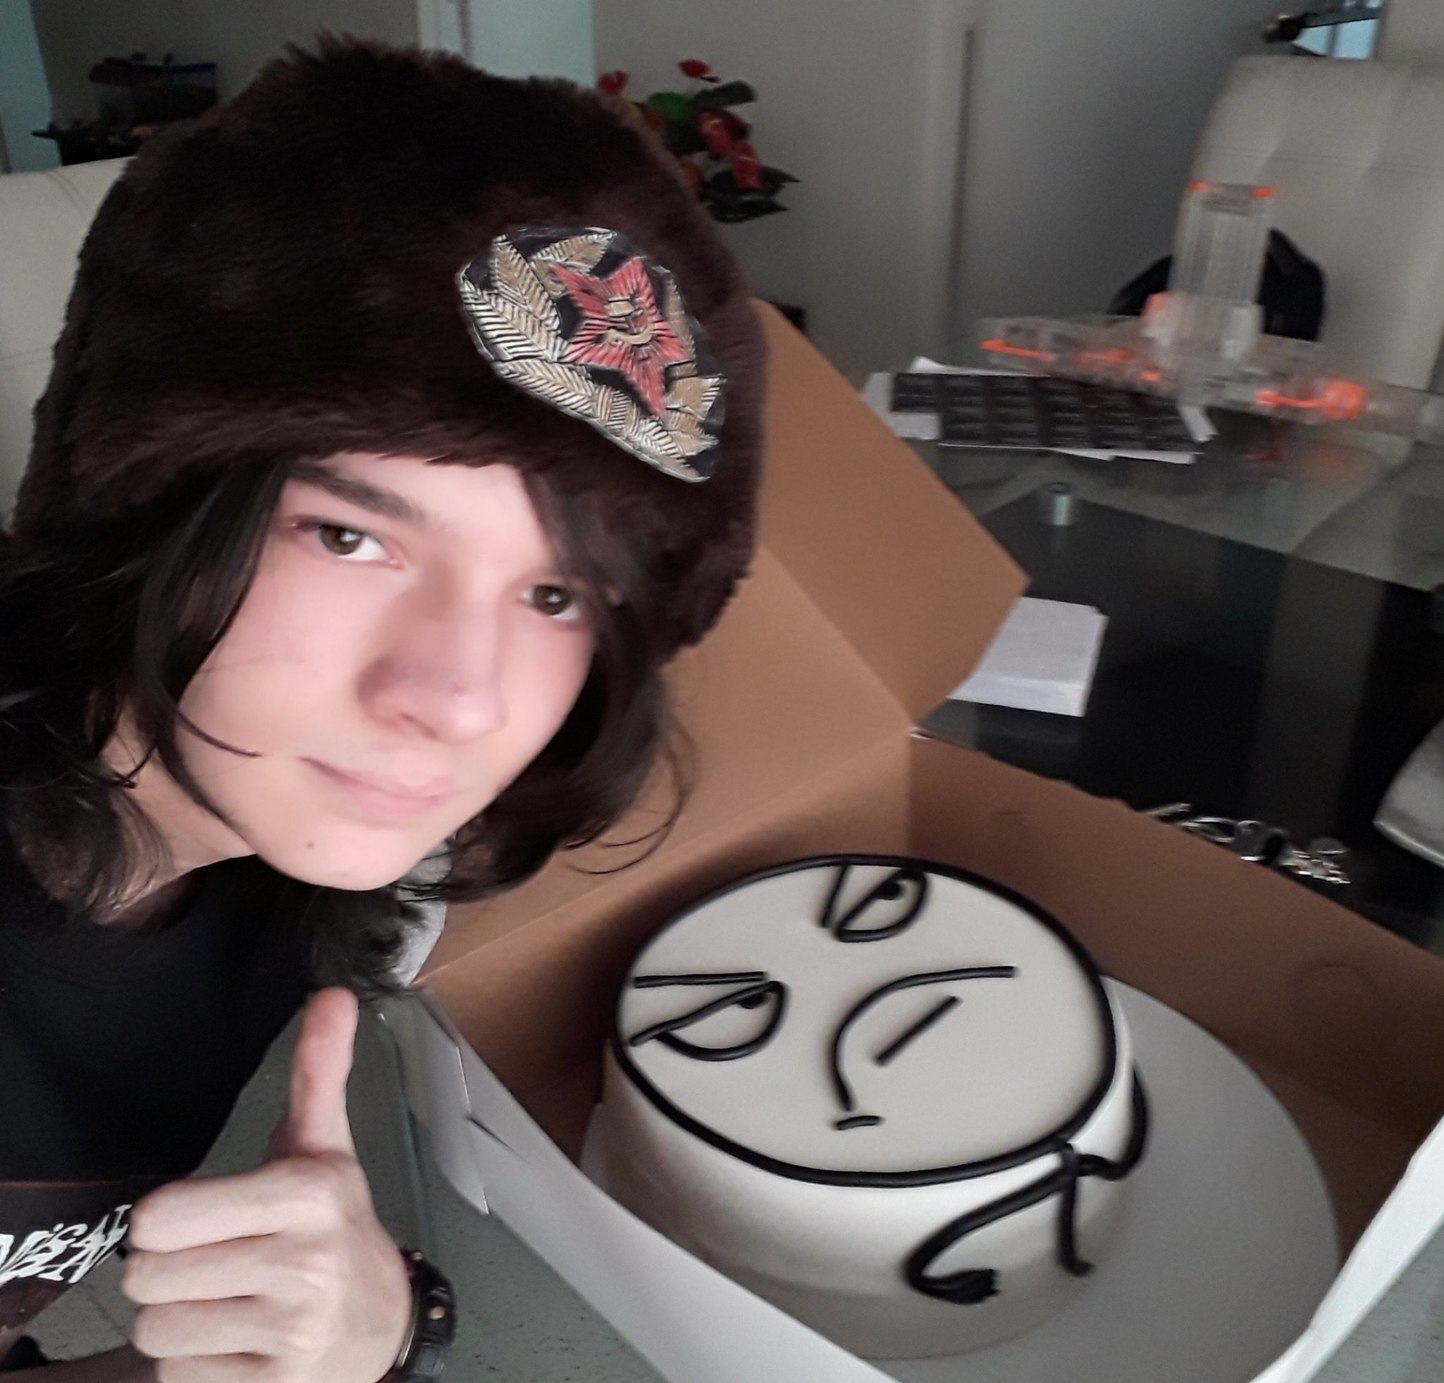 Torta + face reveal - meme